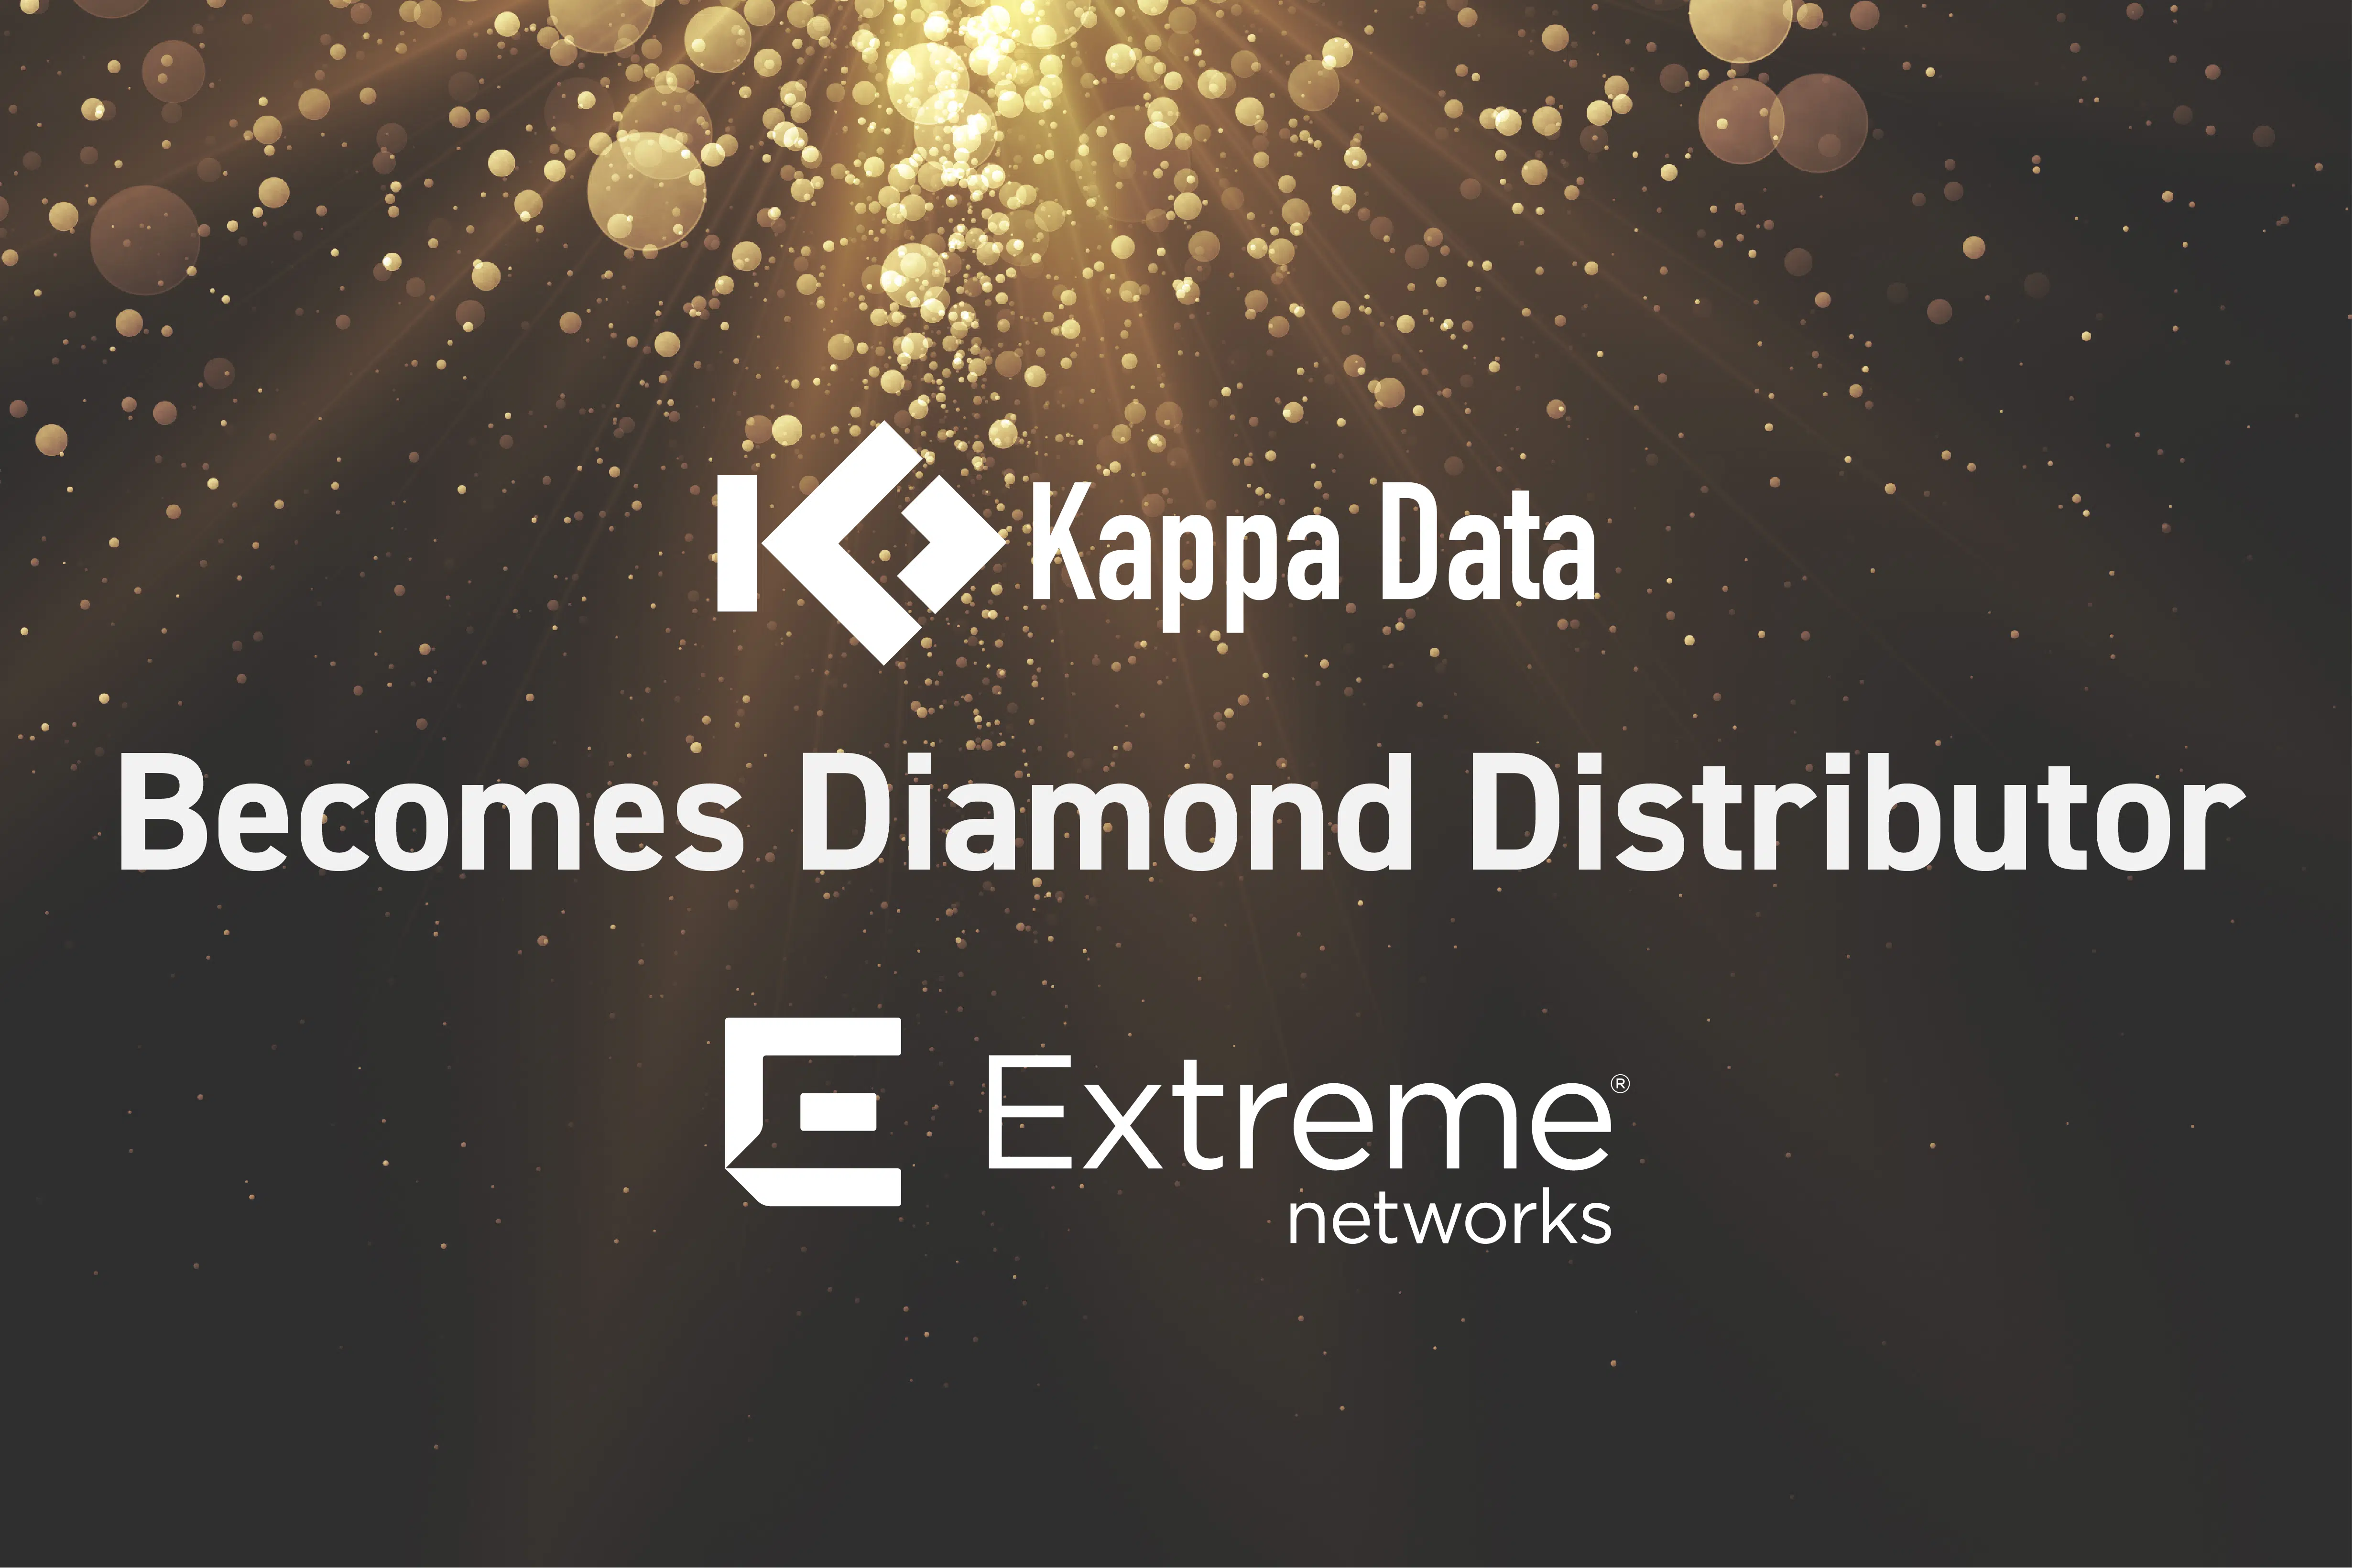 Kappa Data becomes diamond distributor extreme